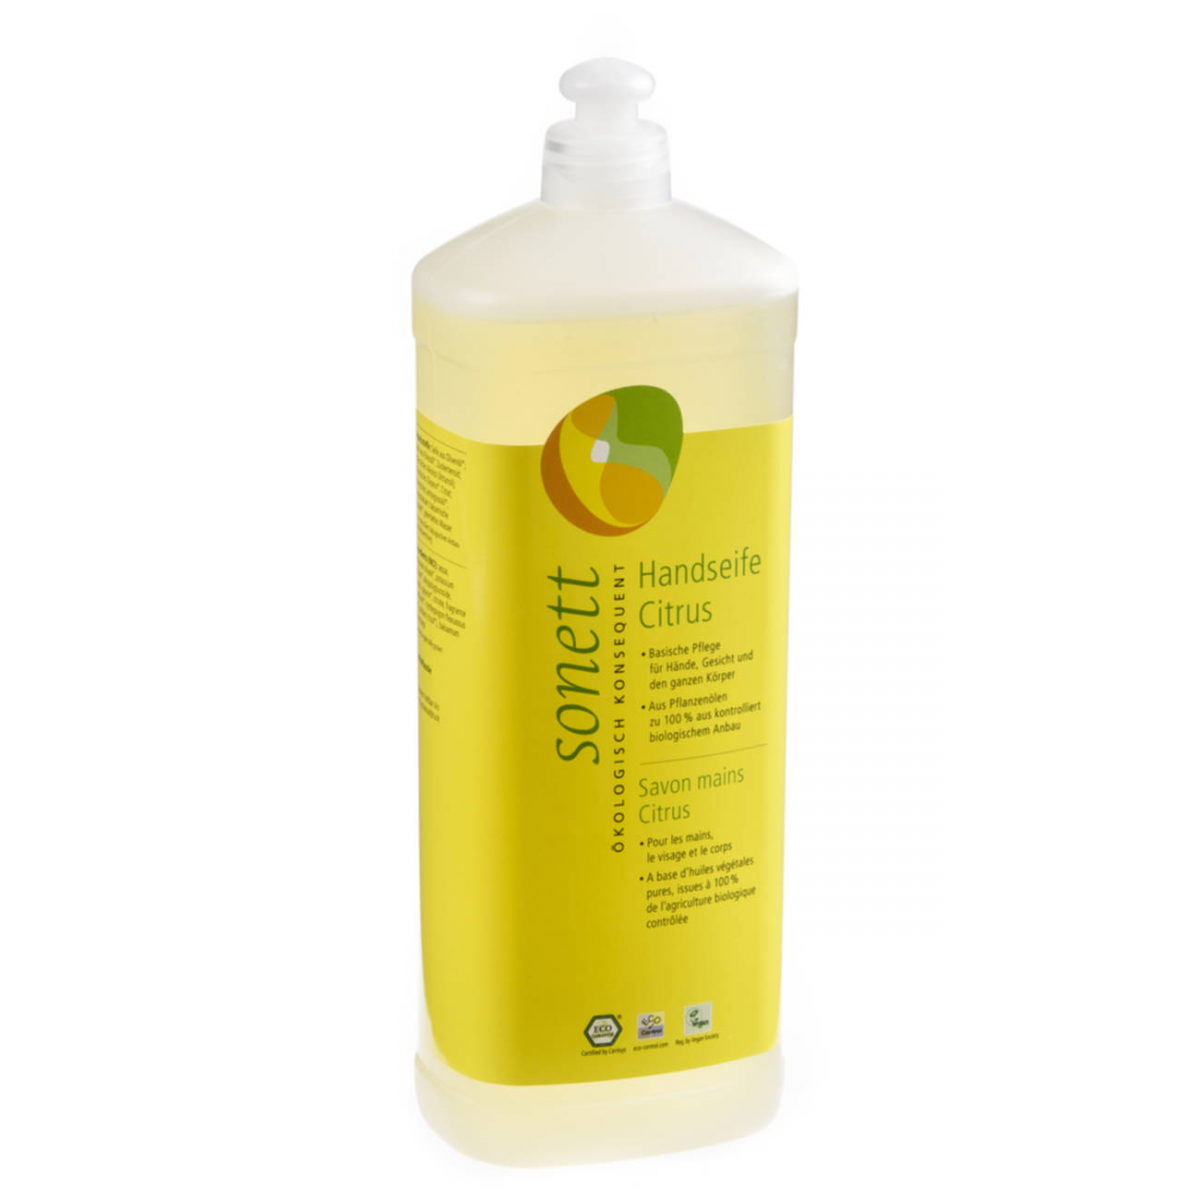 Handseife Citrus, Nachfüllflasche Flasche 1 l/Plastik Einweg - Sonett